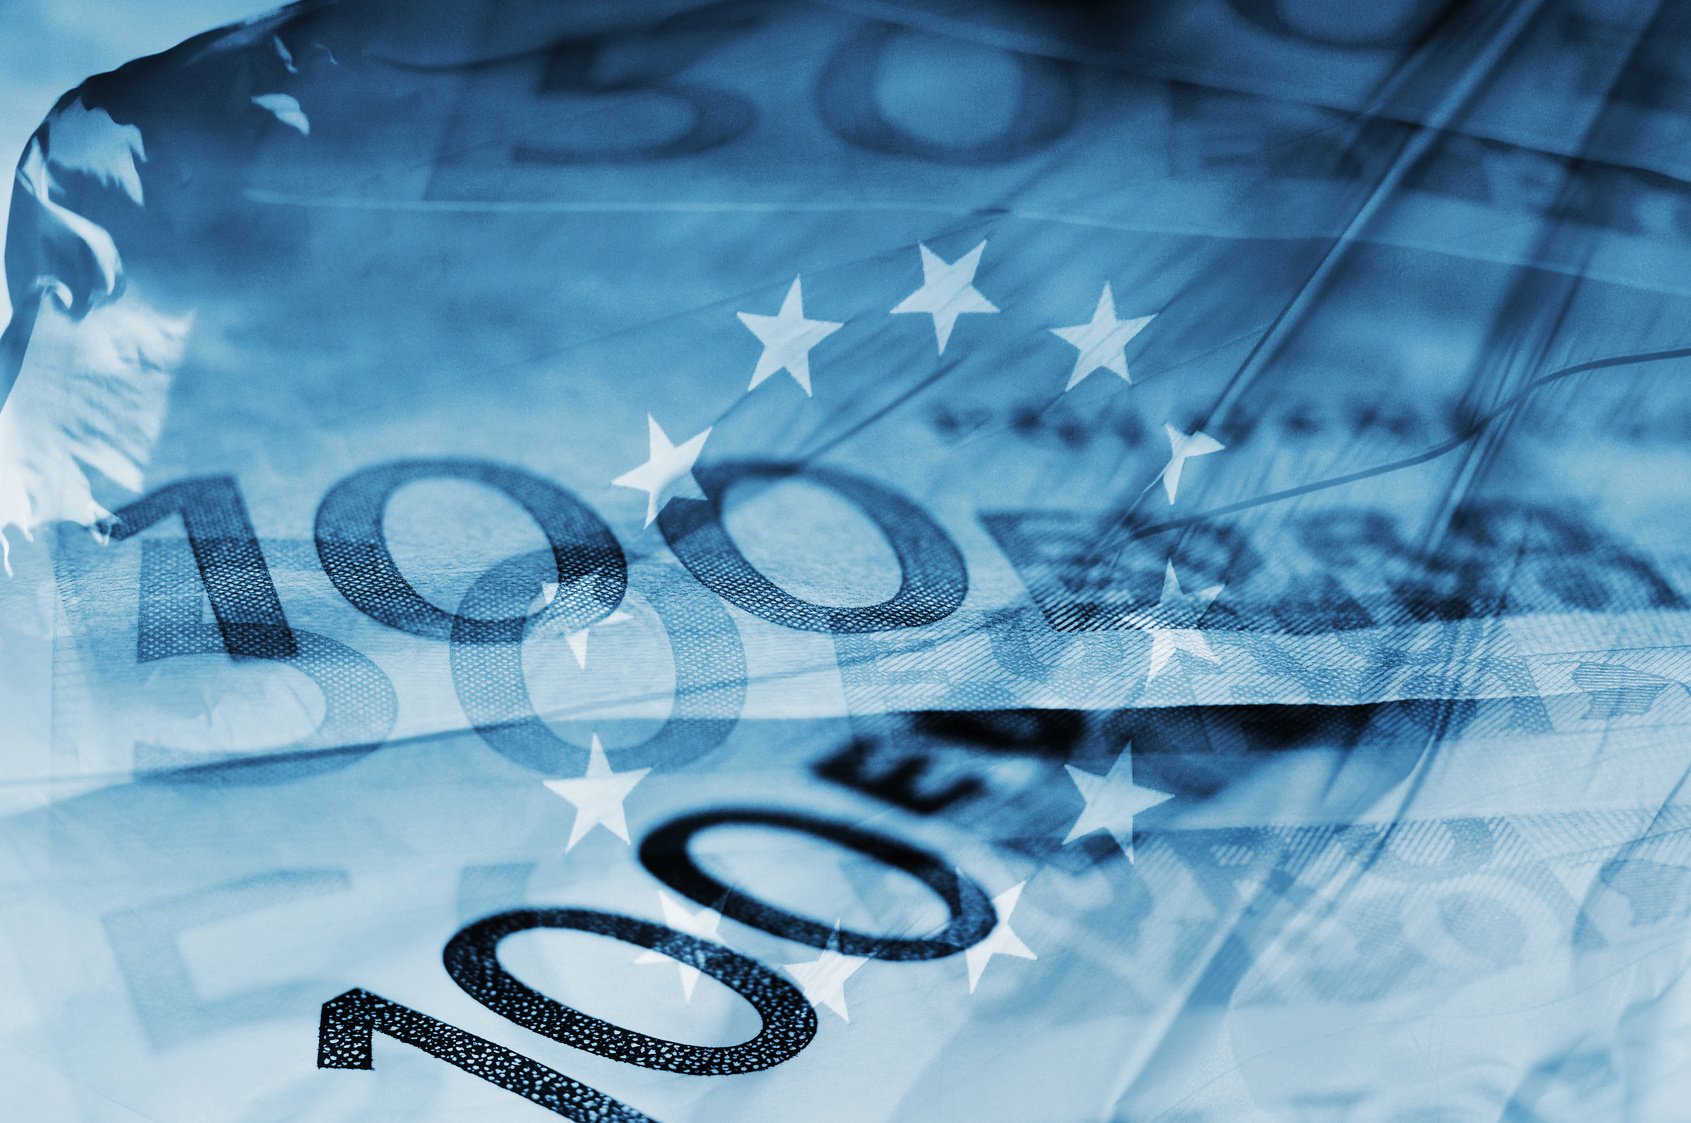 Γερμανία: Σύντομα η επικύρωση του Ταμείου Ανάκαμψης από τη Γερμανία, θα καθυστερήσει όμως η εκταμίευση των κονδυλίων από την ΕΕ, λέει ο  Όλαφ Σολτς